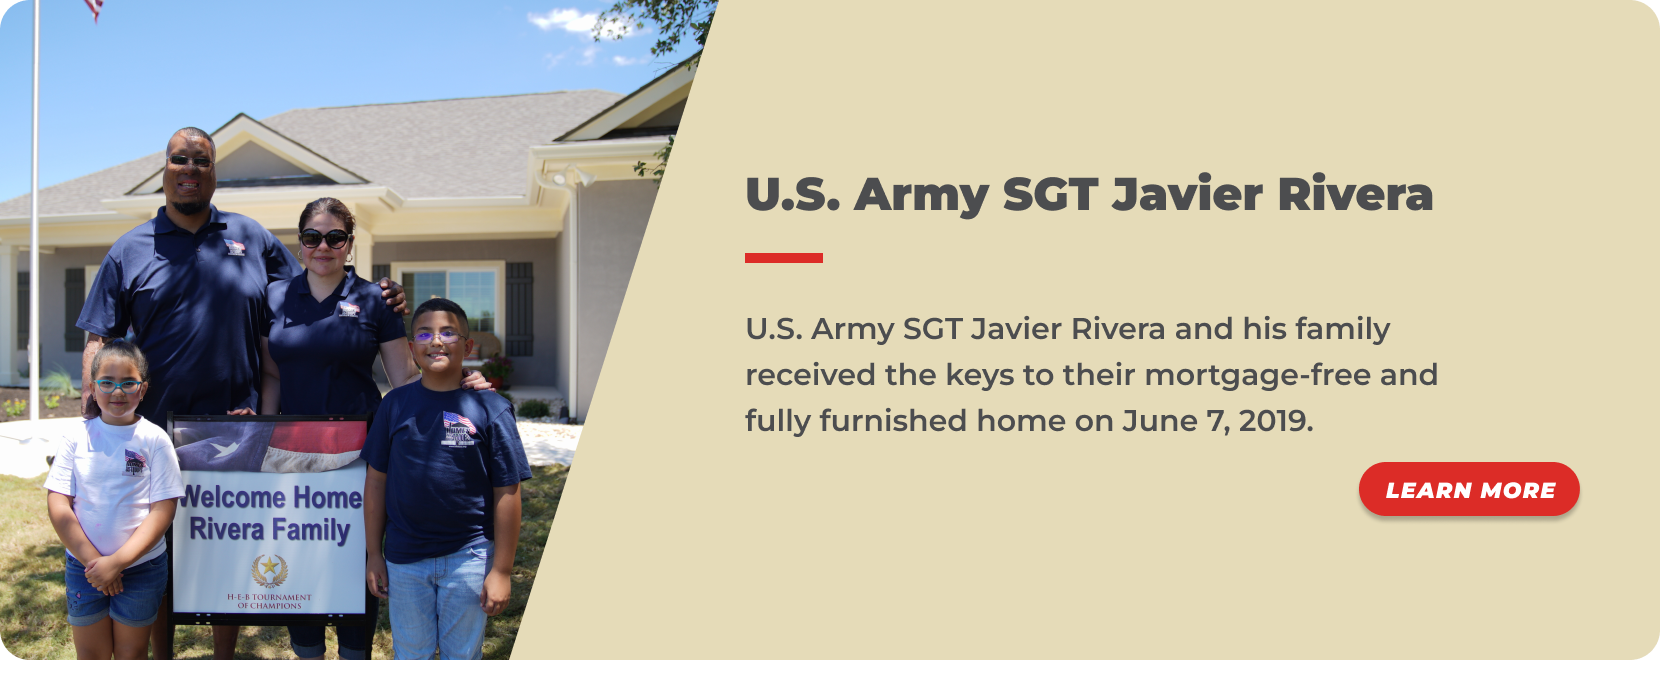 24 -U.S. Army SGT Javier Rivera